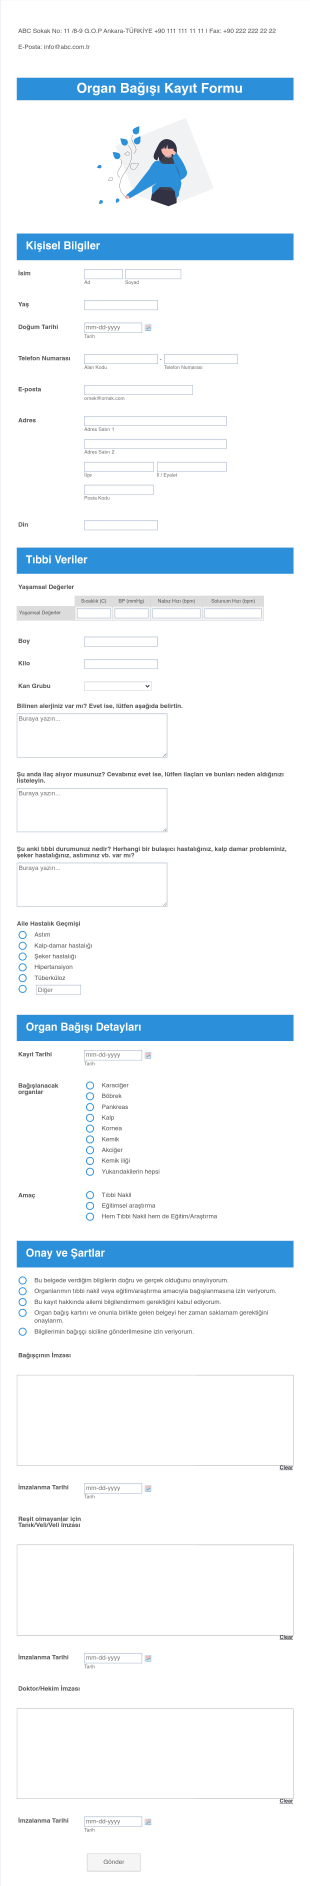 Organ Bağışı Kayıt Form Template